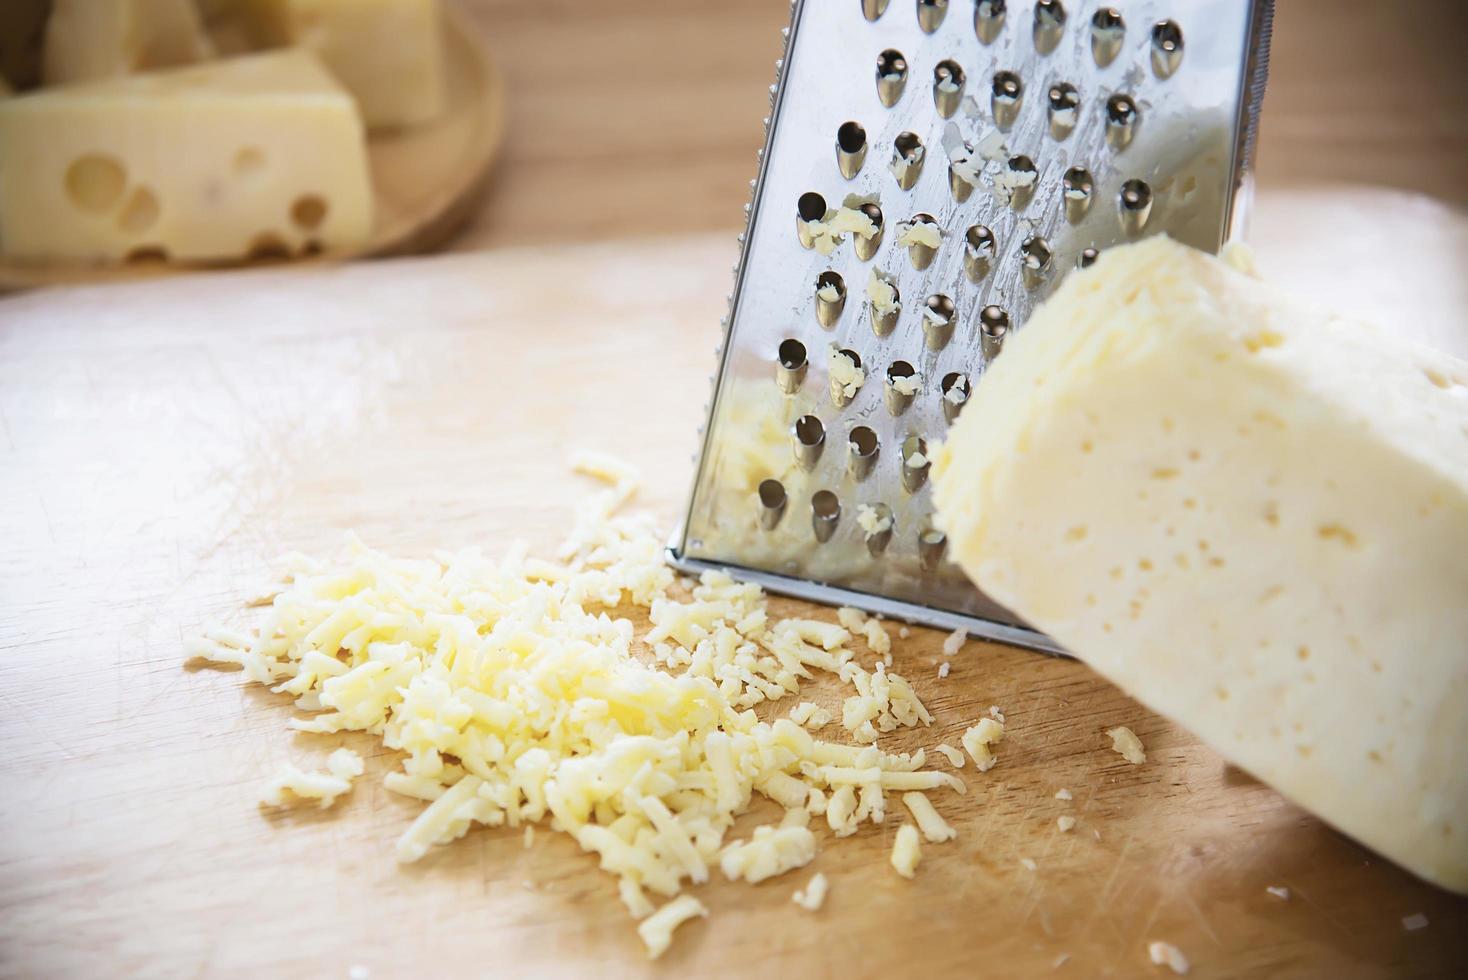 Schöner Käse in der Küche - Käsezubereitungskonzept foto